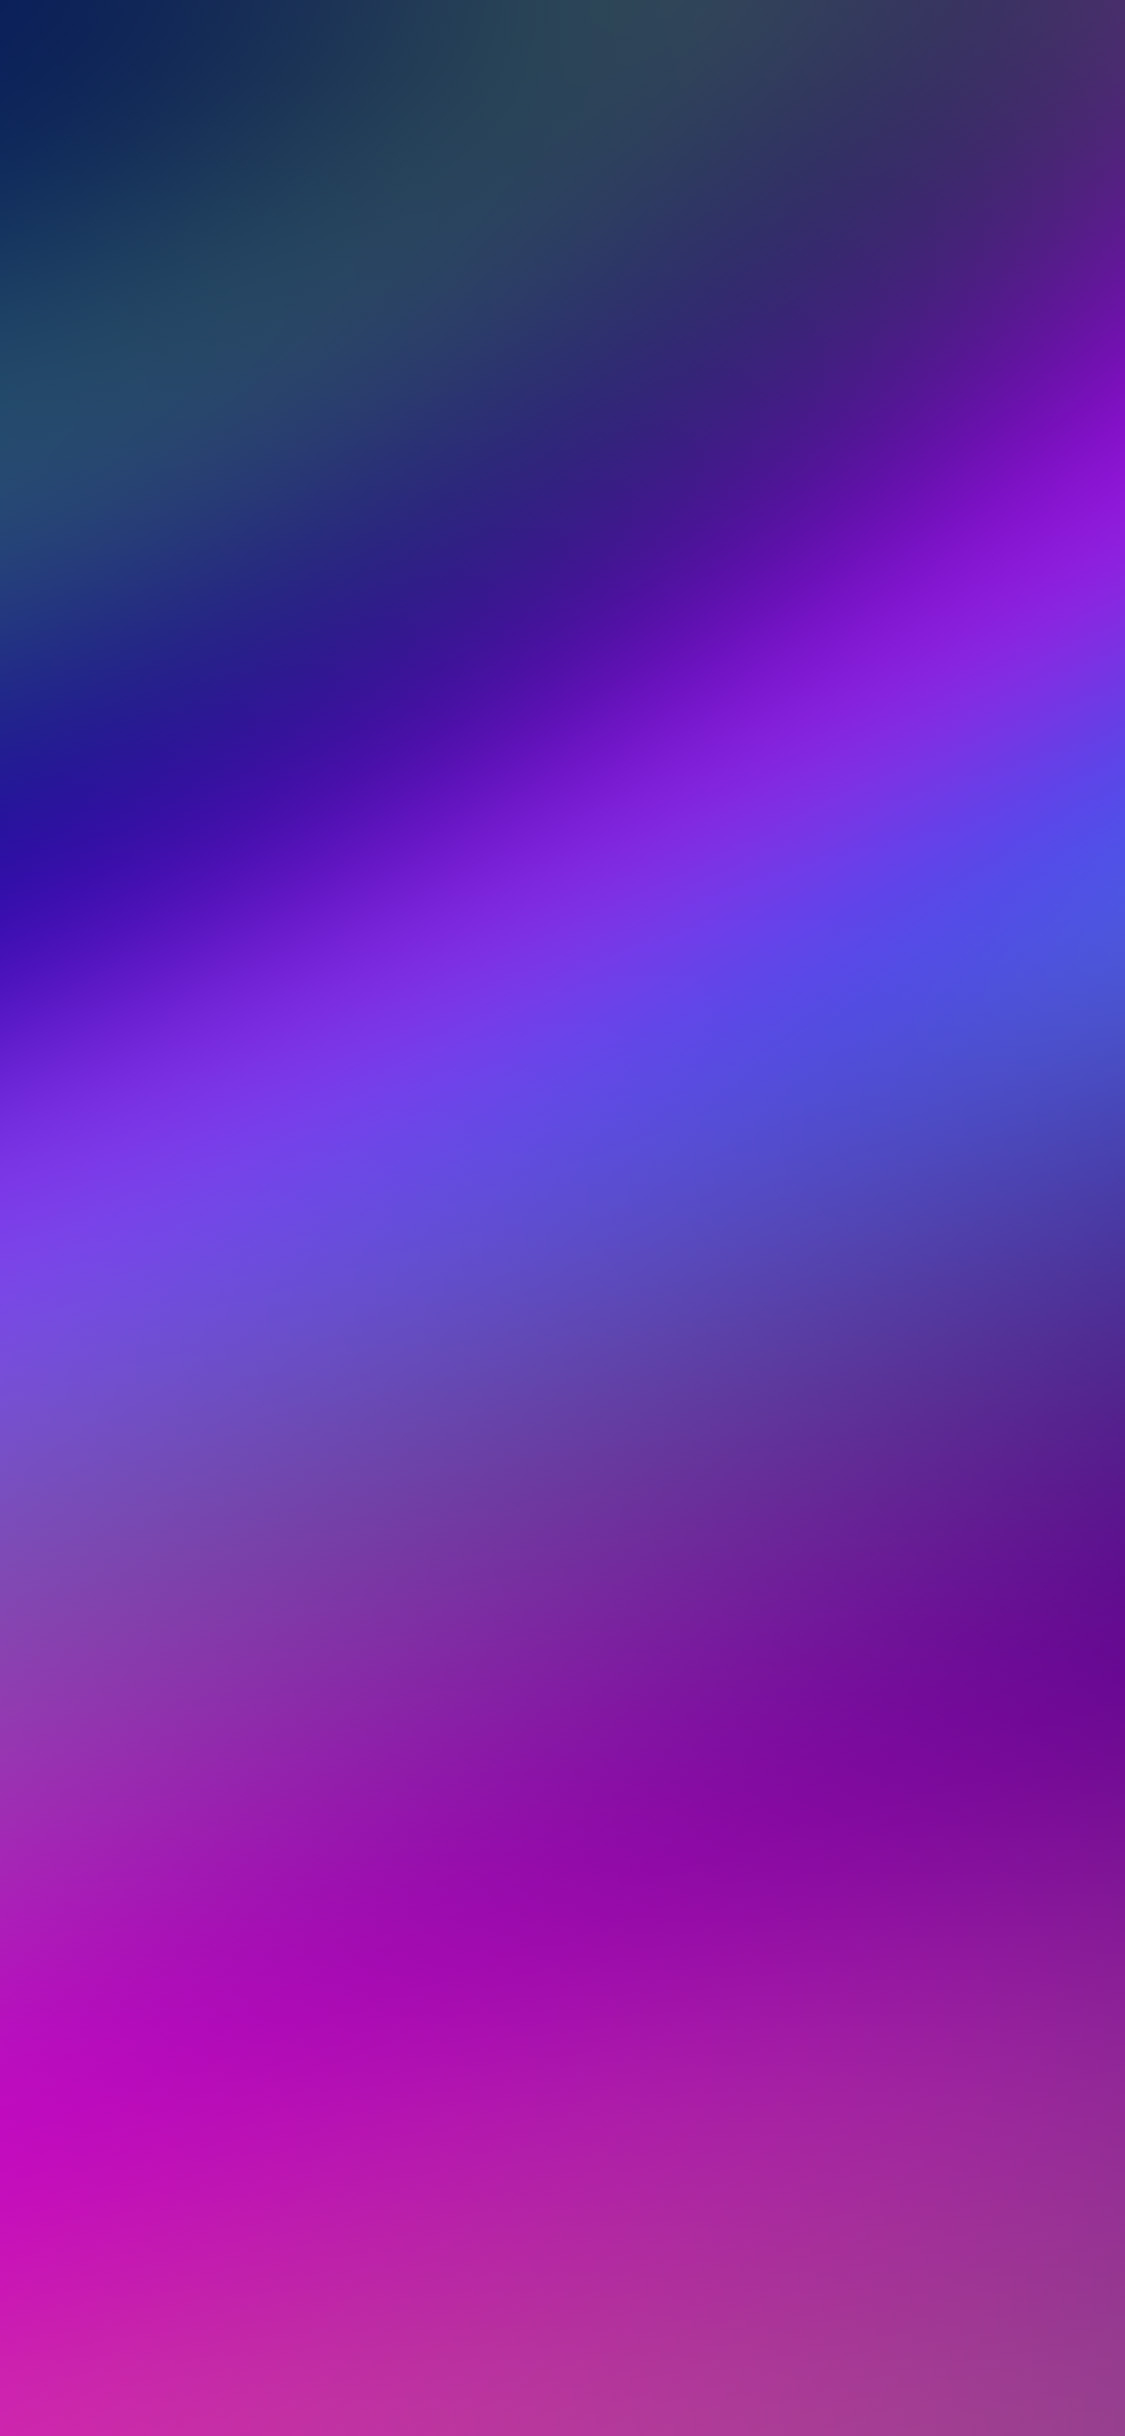 1125x2436 | iPhone X wallpaper | sm00-purple-blue-blur-gradati